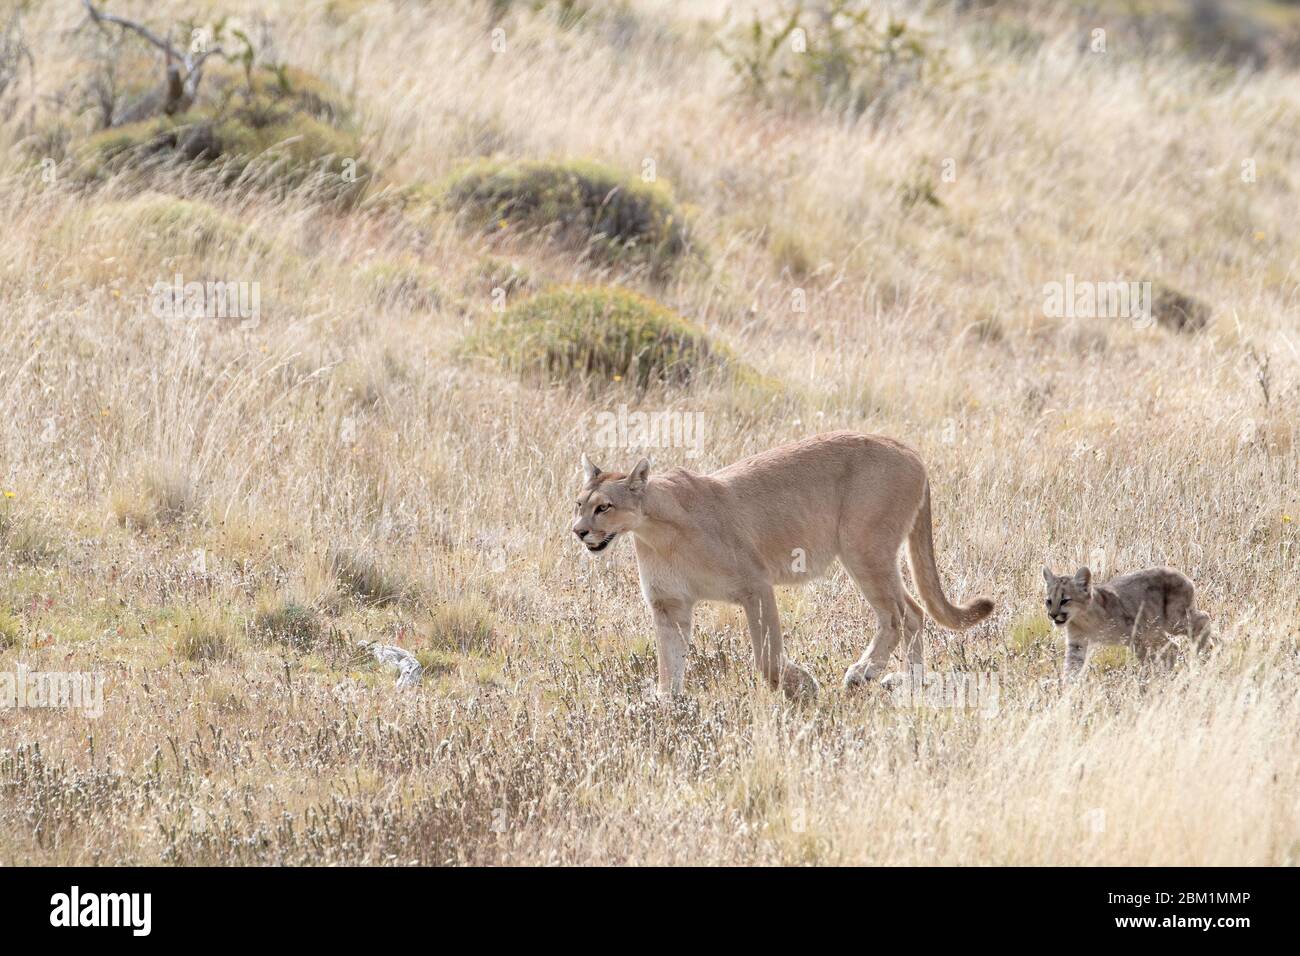 Puma mère et jeunes petits marchant dans de l'herbe courte sur un côté de colline. Également appelé cougar ou lion de montagne. Banque D'Images